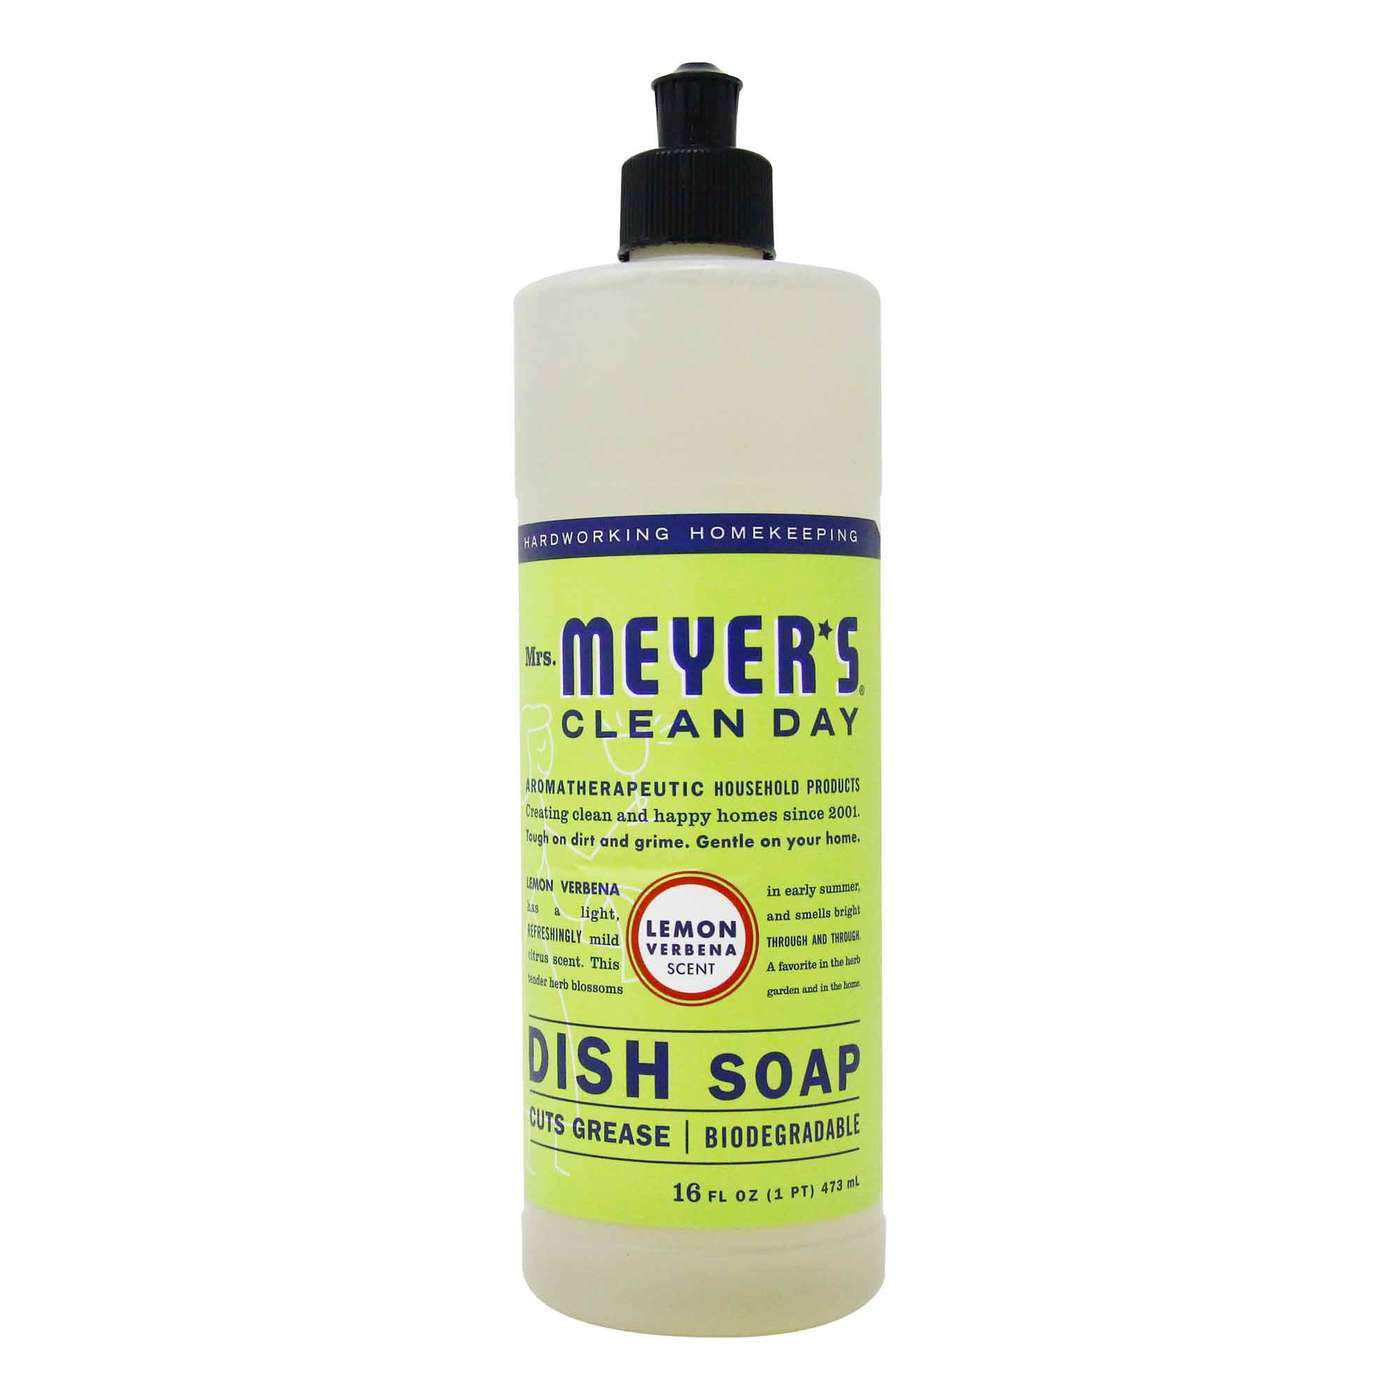 Mrs. Meyers Clean Day Dish Soap, Lemon Verbena - 16 fl oz (473 ml